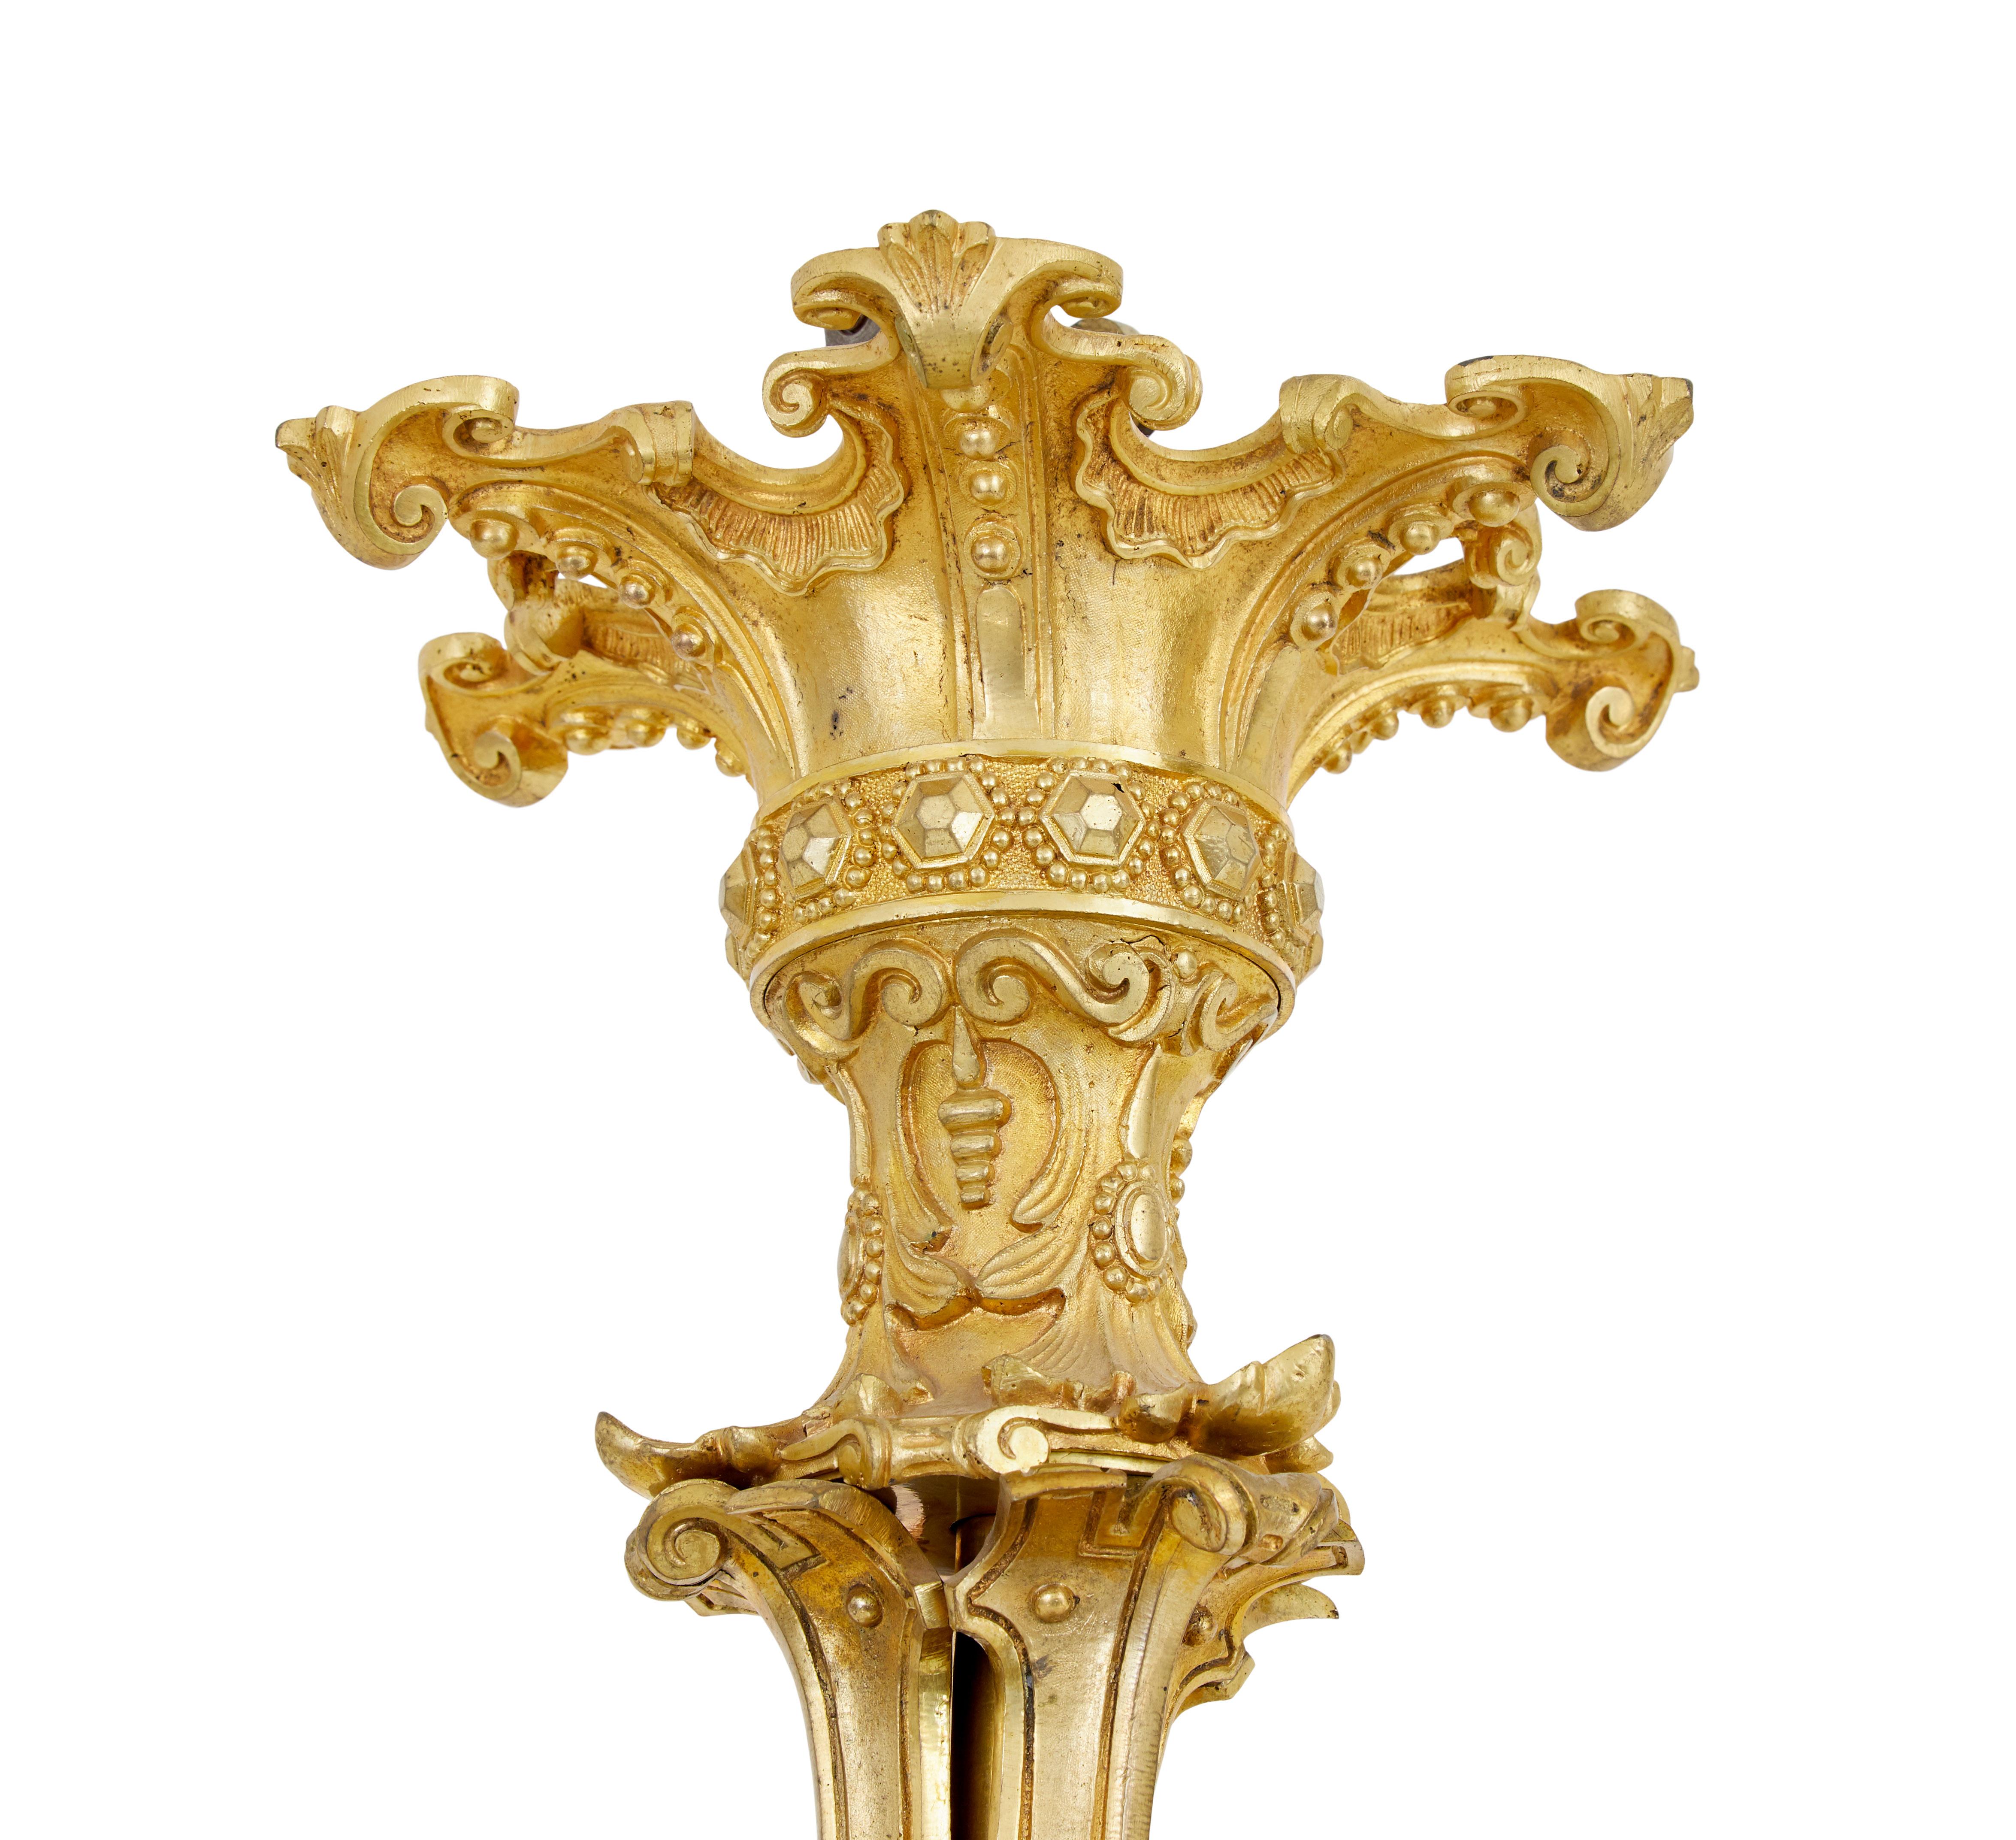 Französischer 8-armiger Kronleuchter aus vergoldetem Ormolu, 19. Jahrhundert, um 1880.

Hergestellt in Frankreich mit einer Technik namens Quecksilbervergoldung. 8 Arme, an denen jeweils 2 Kerzen hängen. Verziert mit Akanthusblättern und